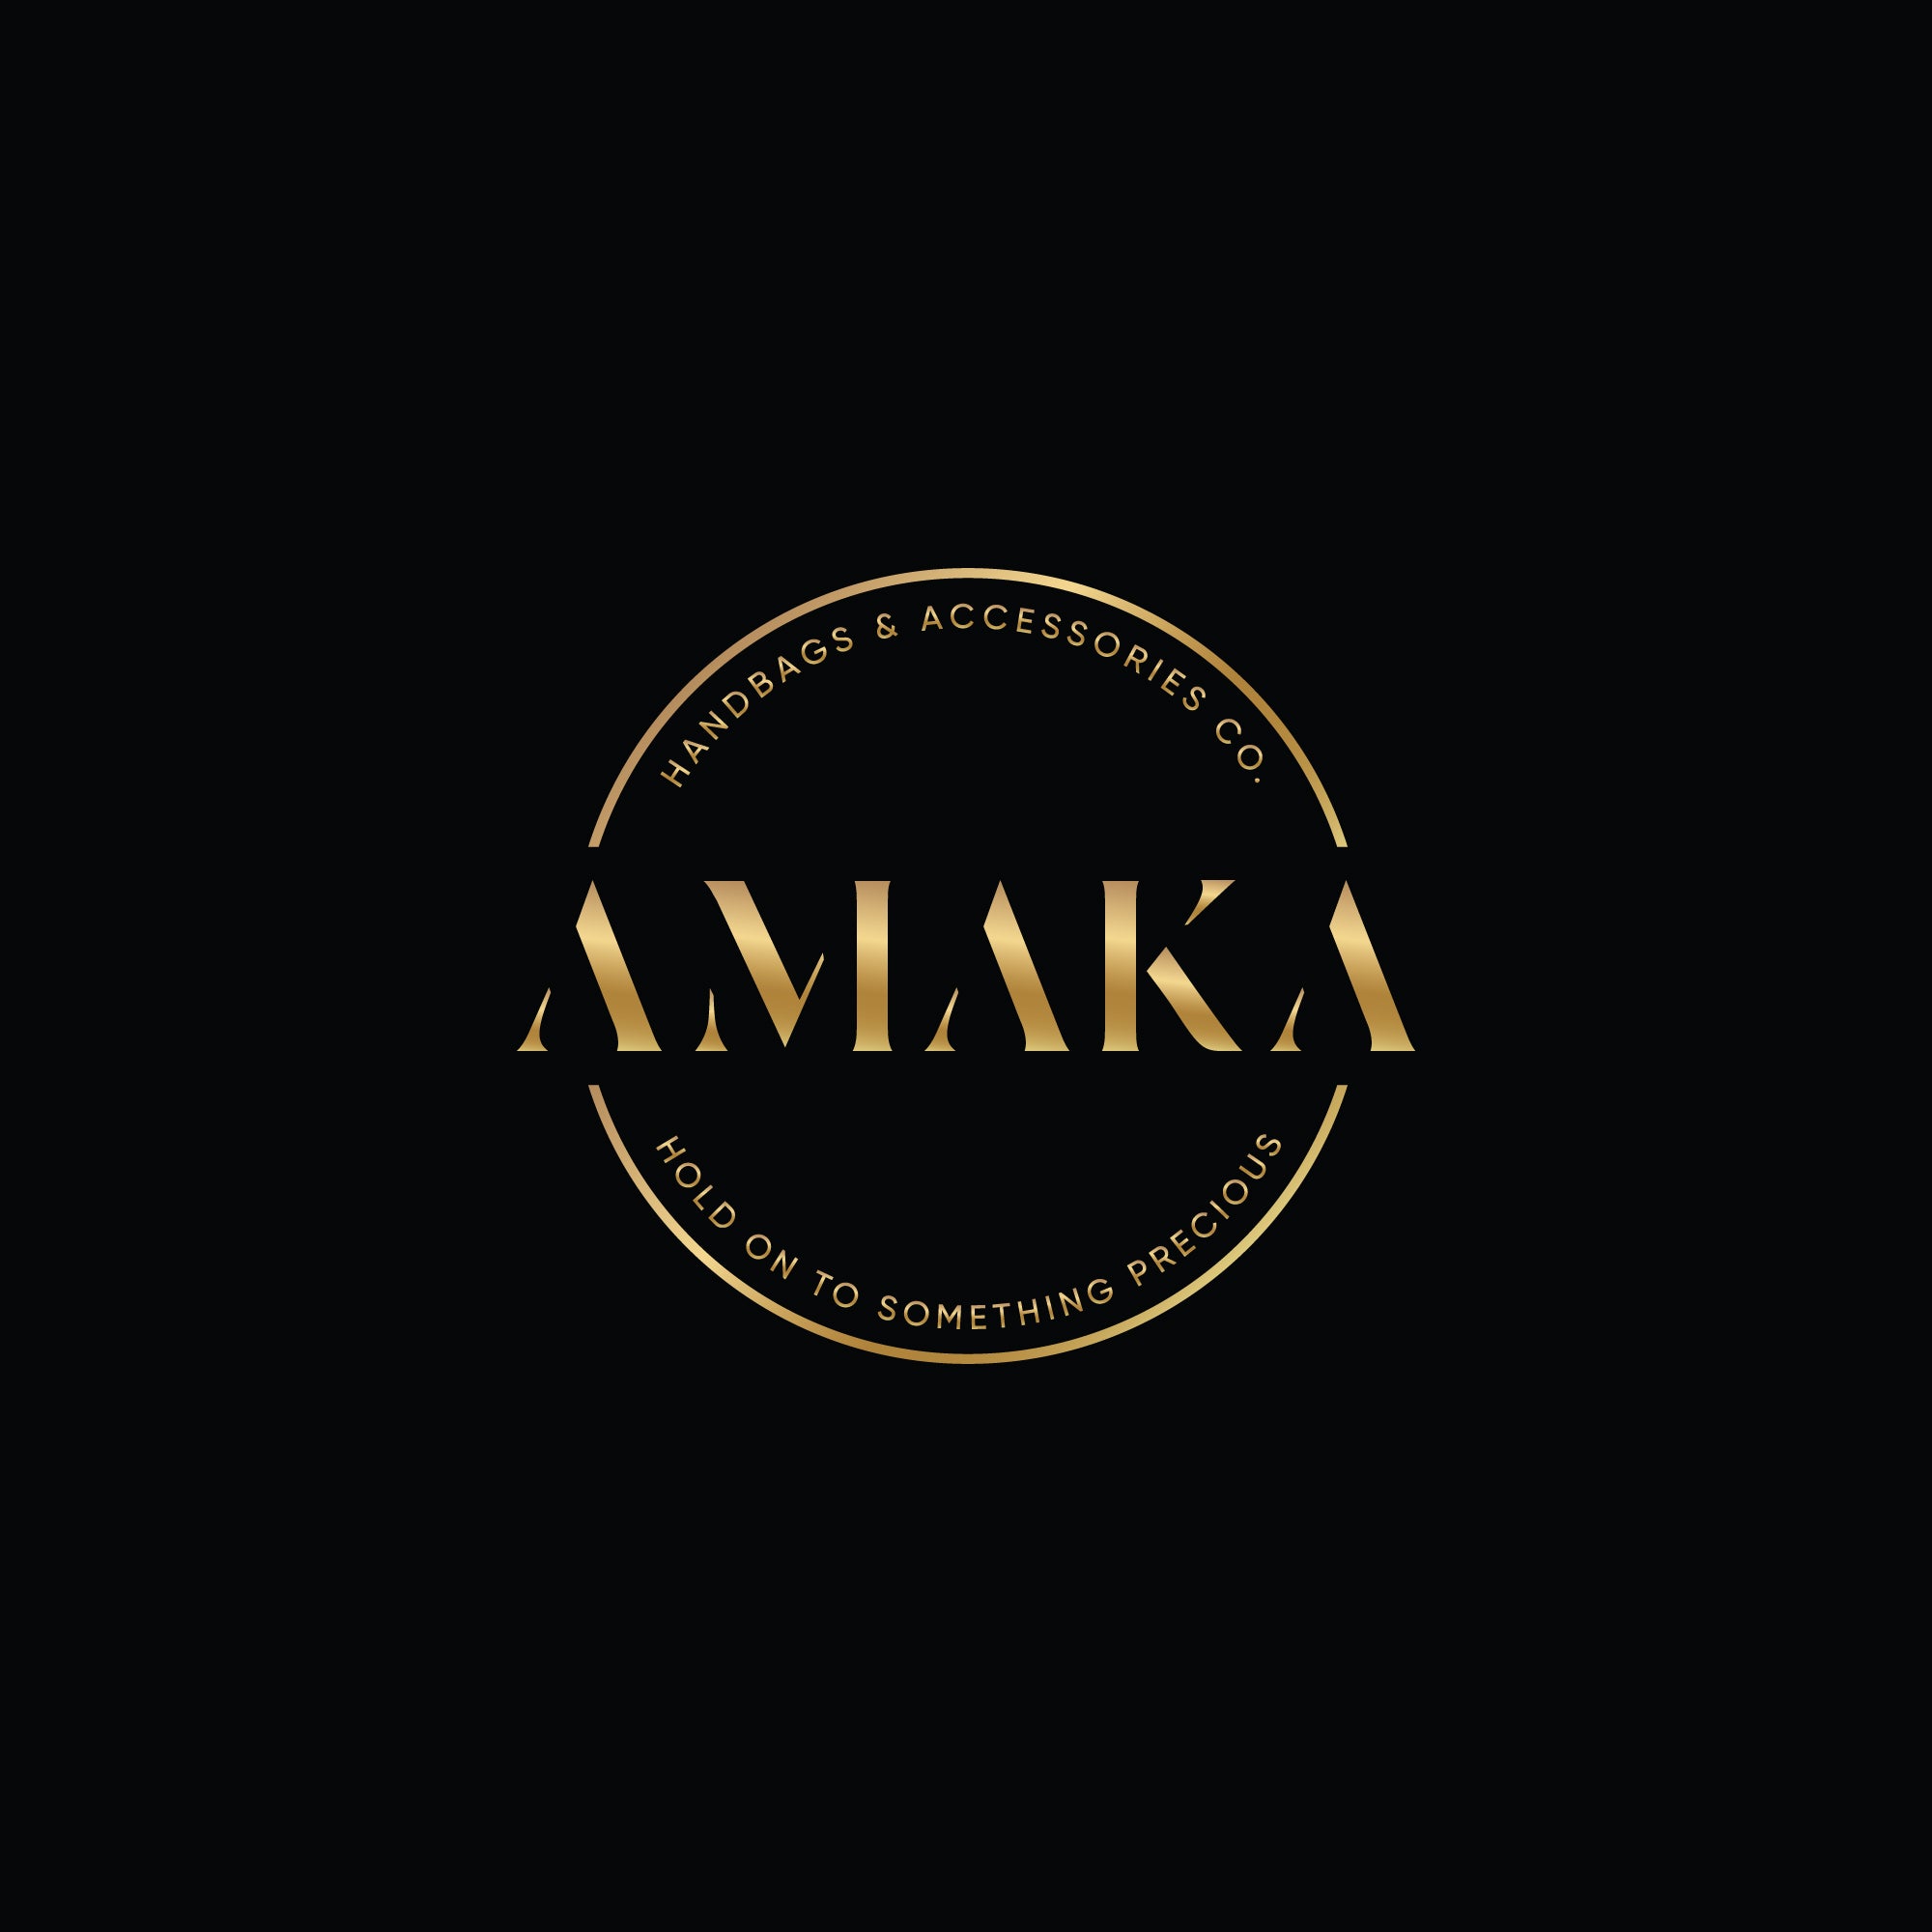 AMAKA GIFT CARD